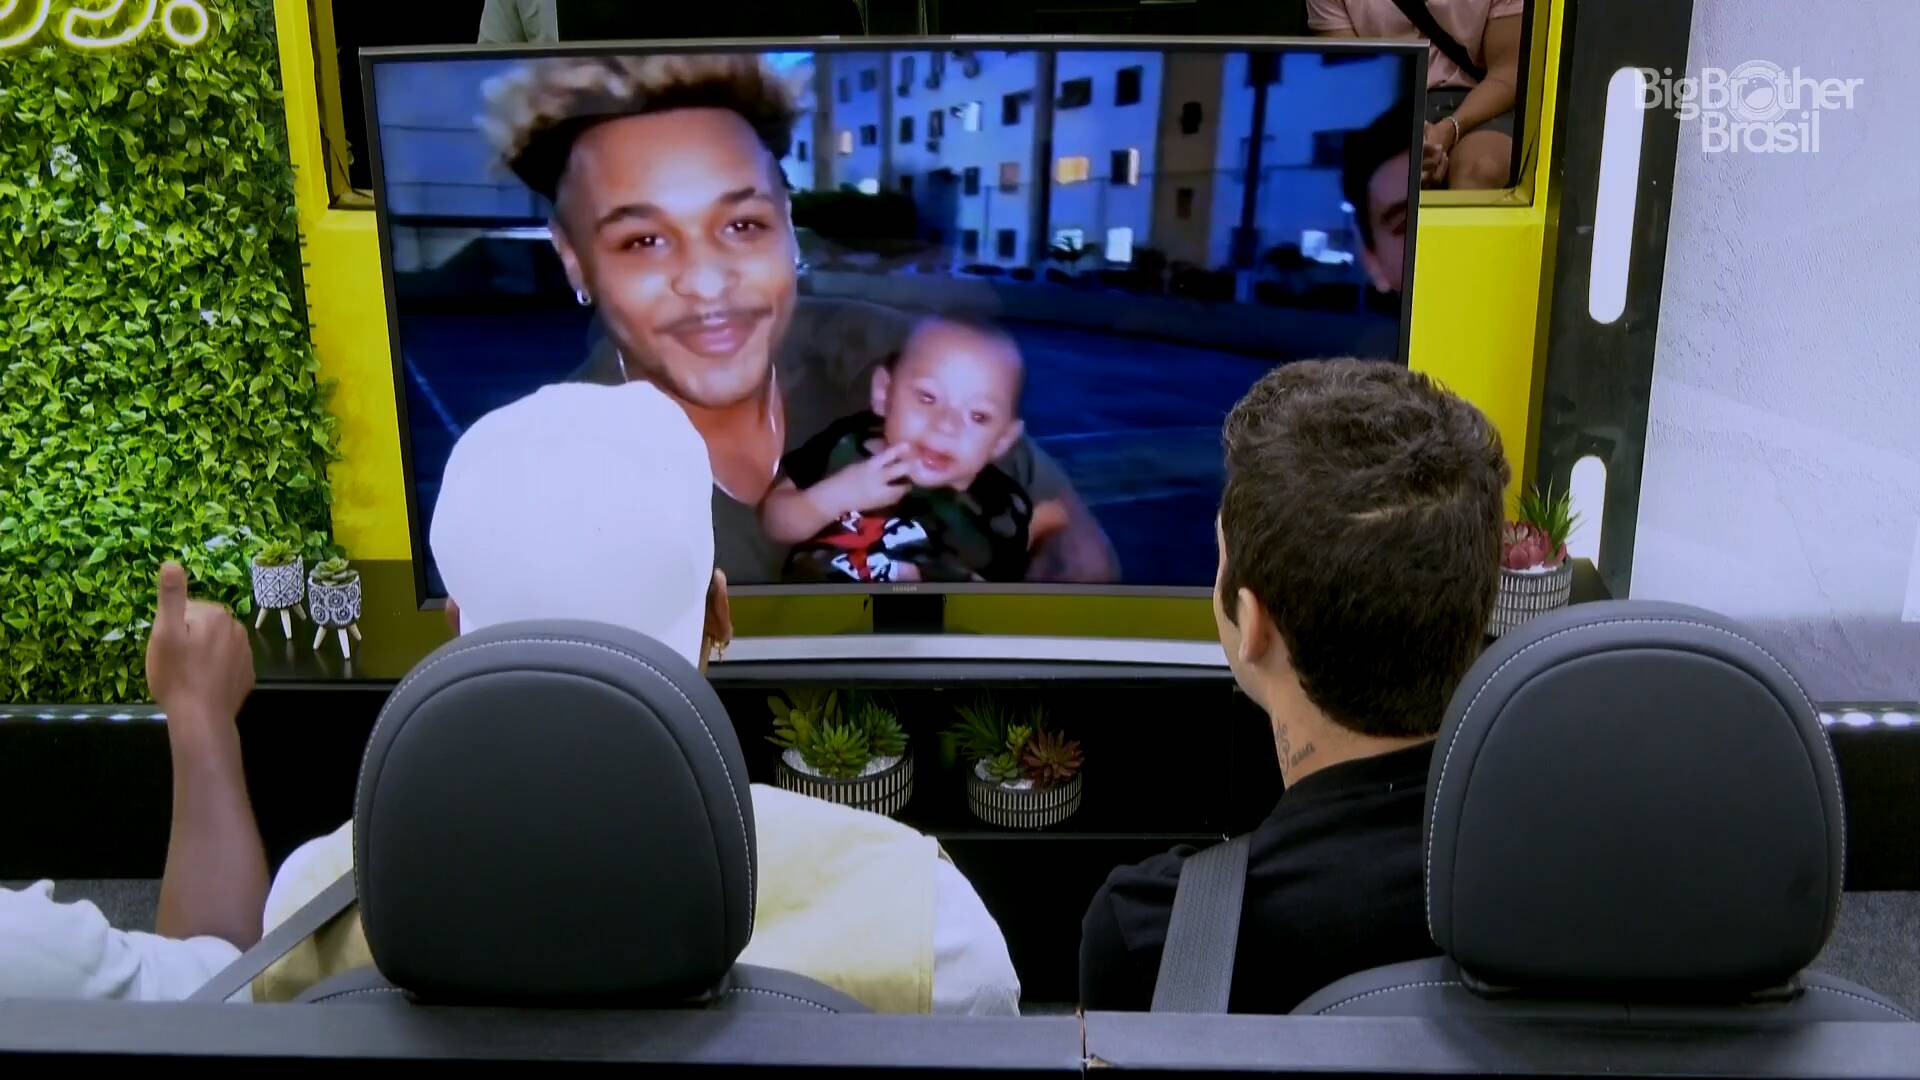 Filho de Paulo André marca presença no vídeo enviado pela família. Foto: Reprodução/Globoplay - 27/03/2022